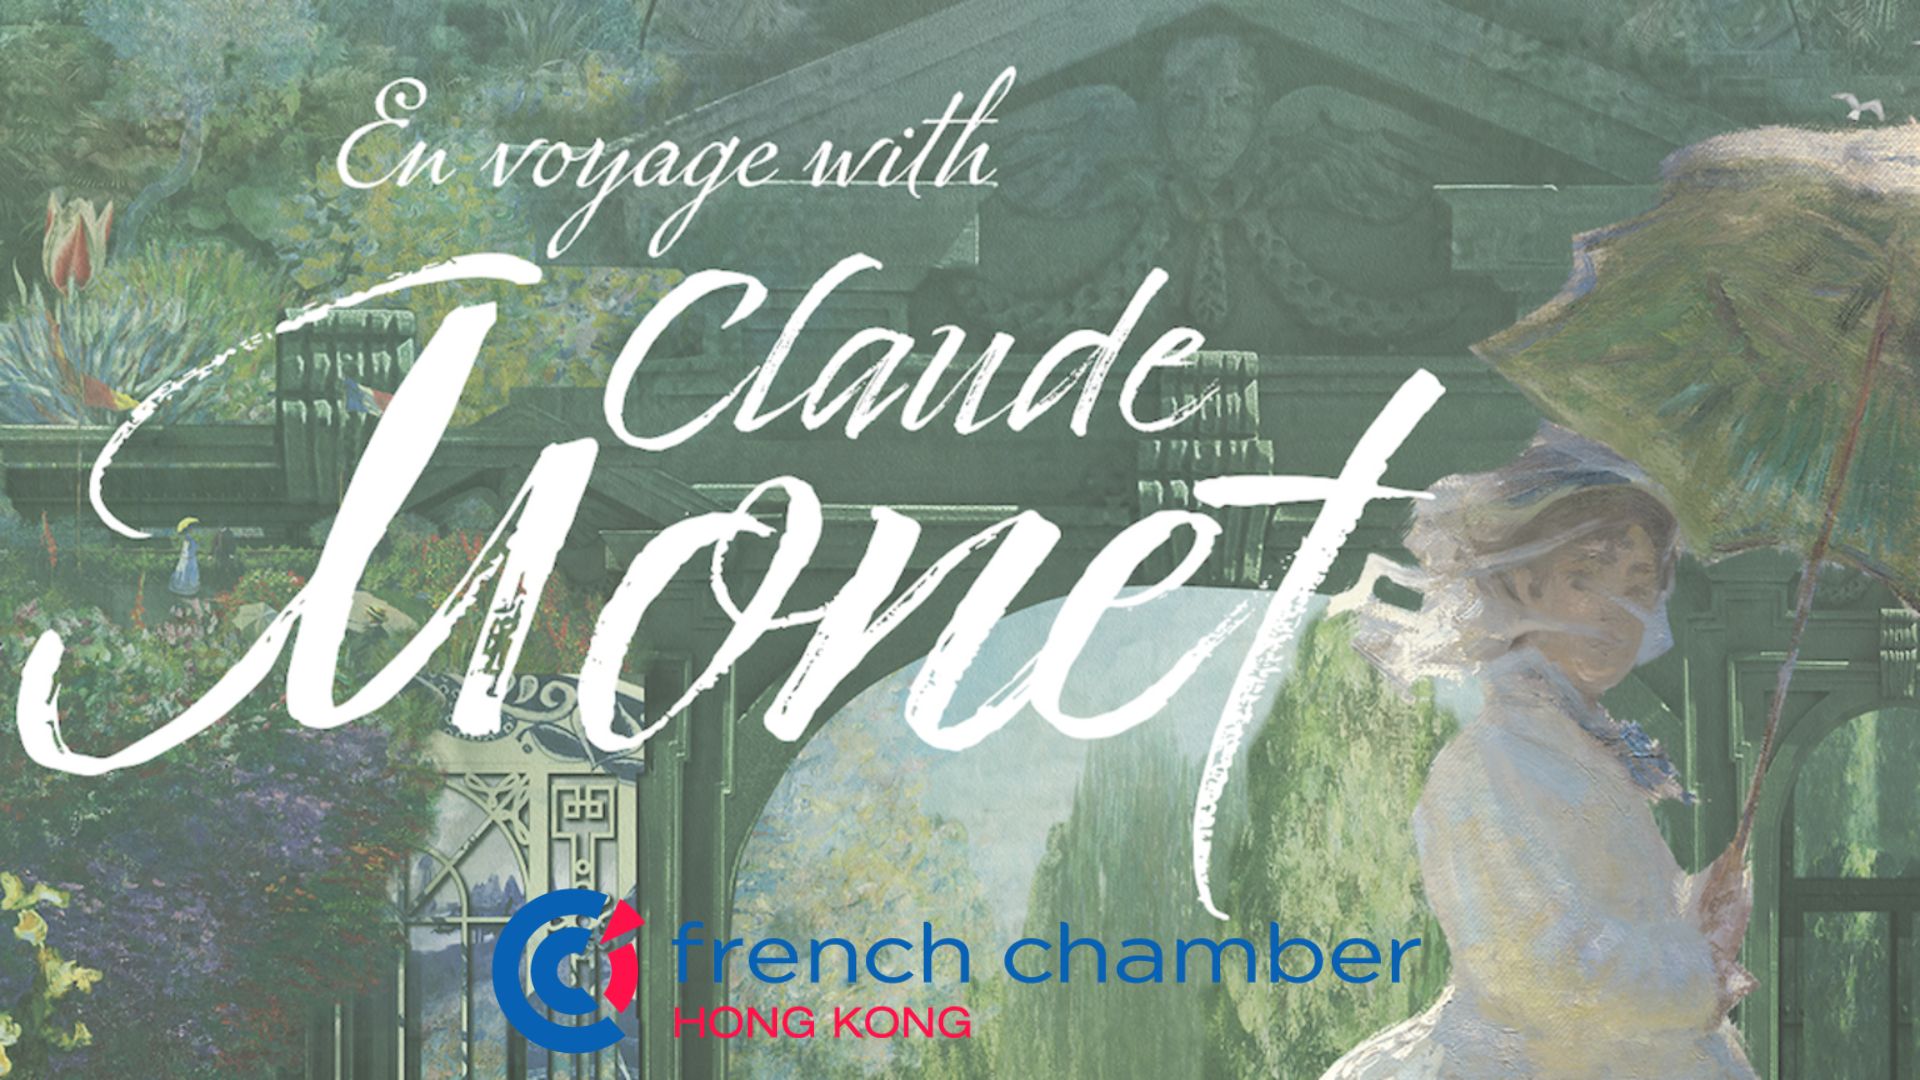 La première expérience immersive de Claude Monet à Hong Kong